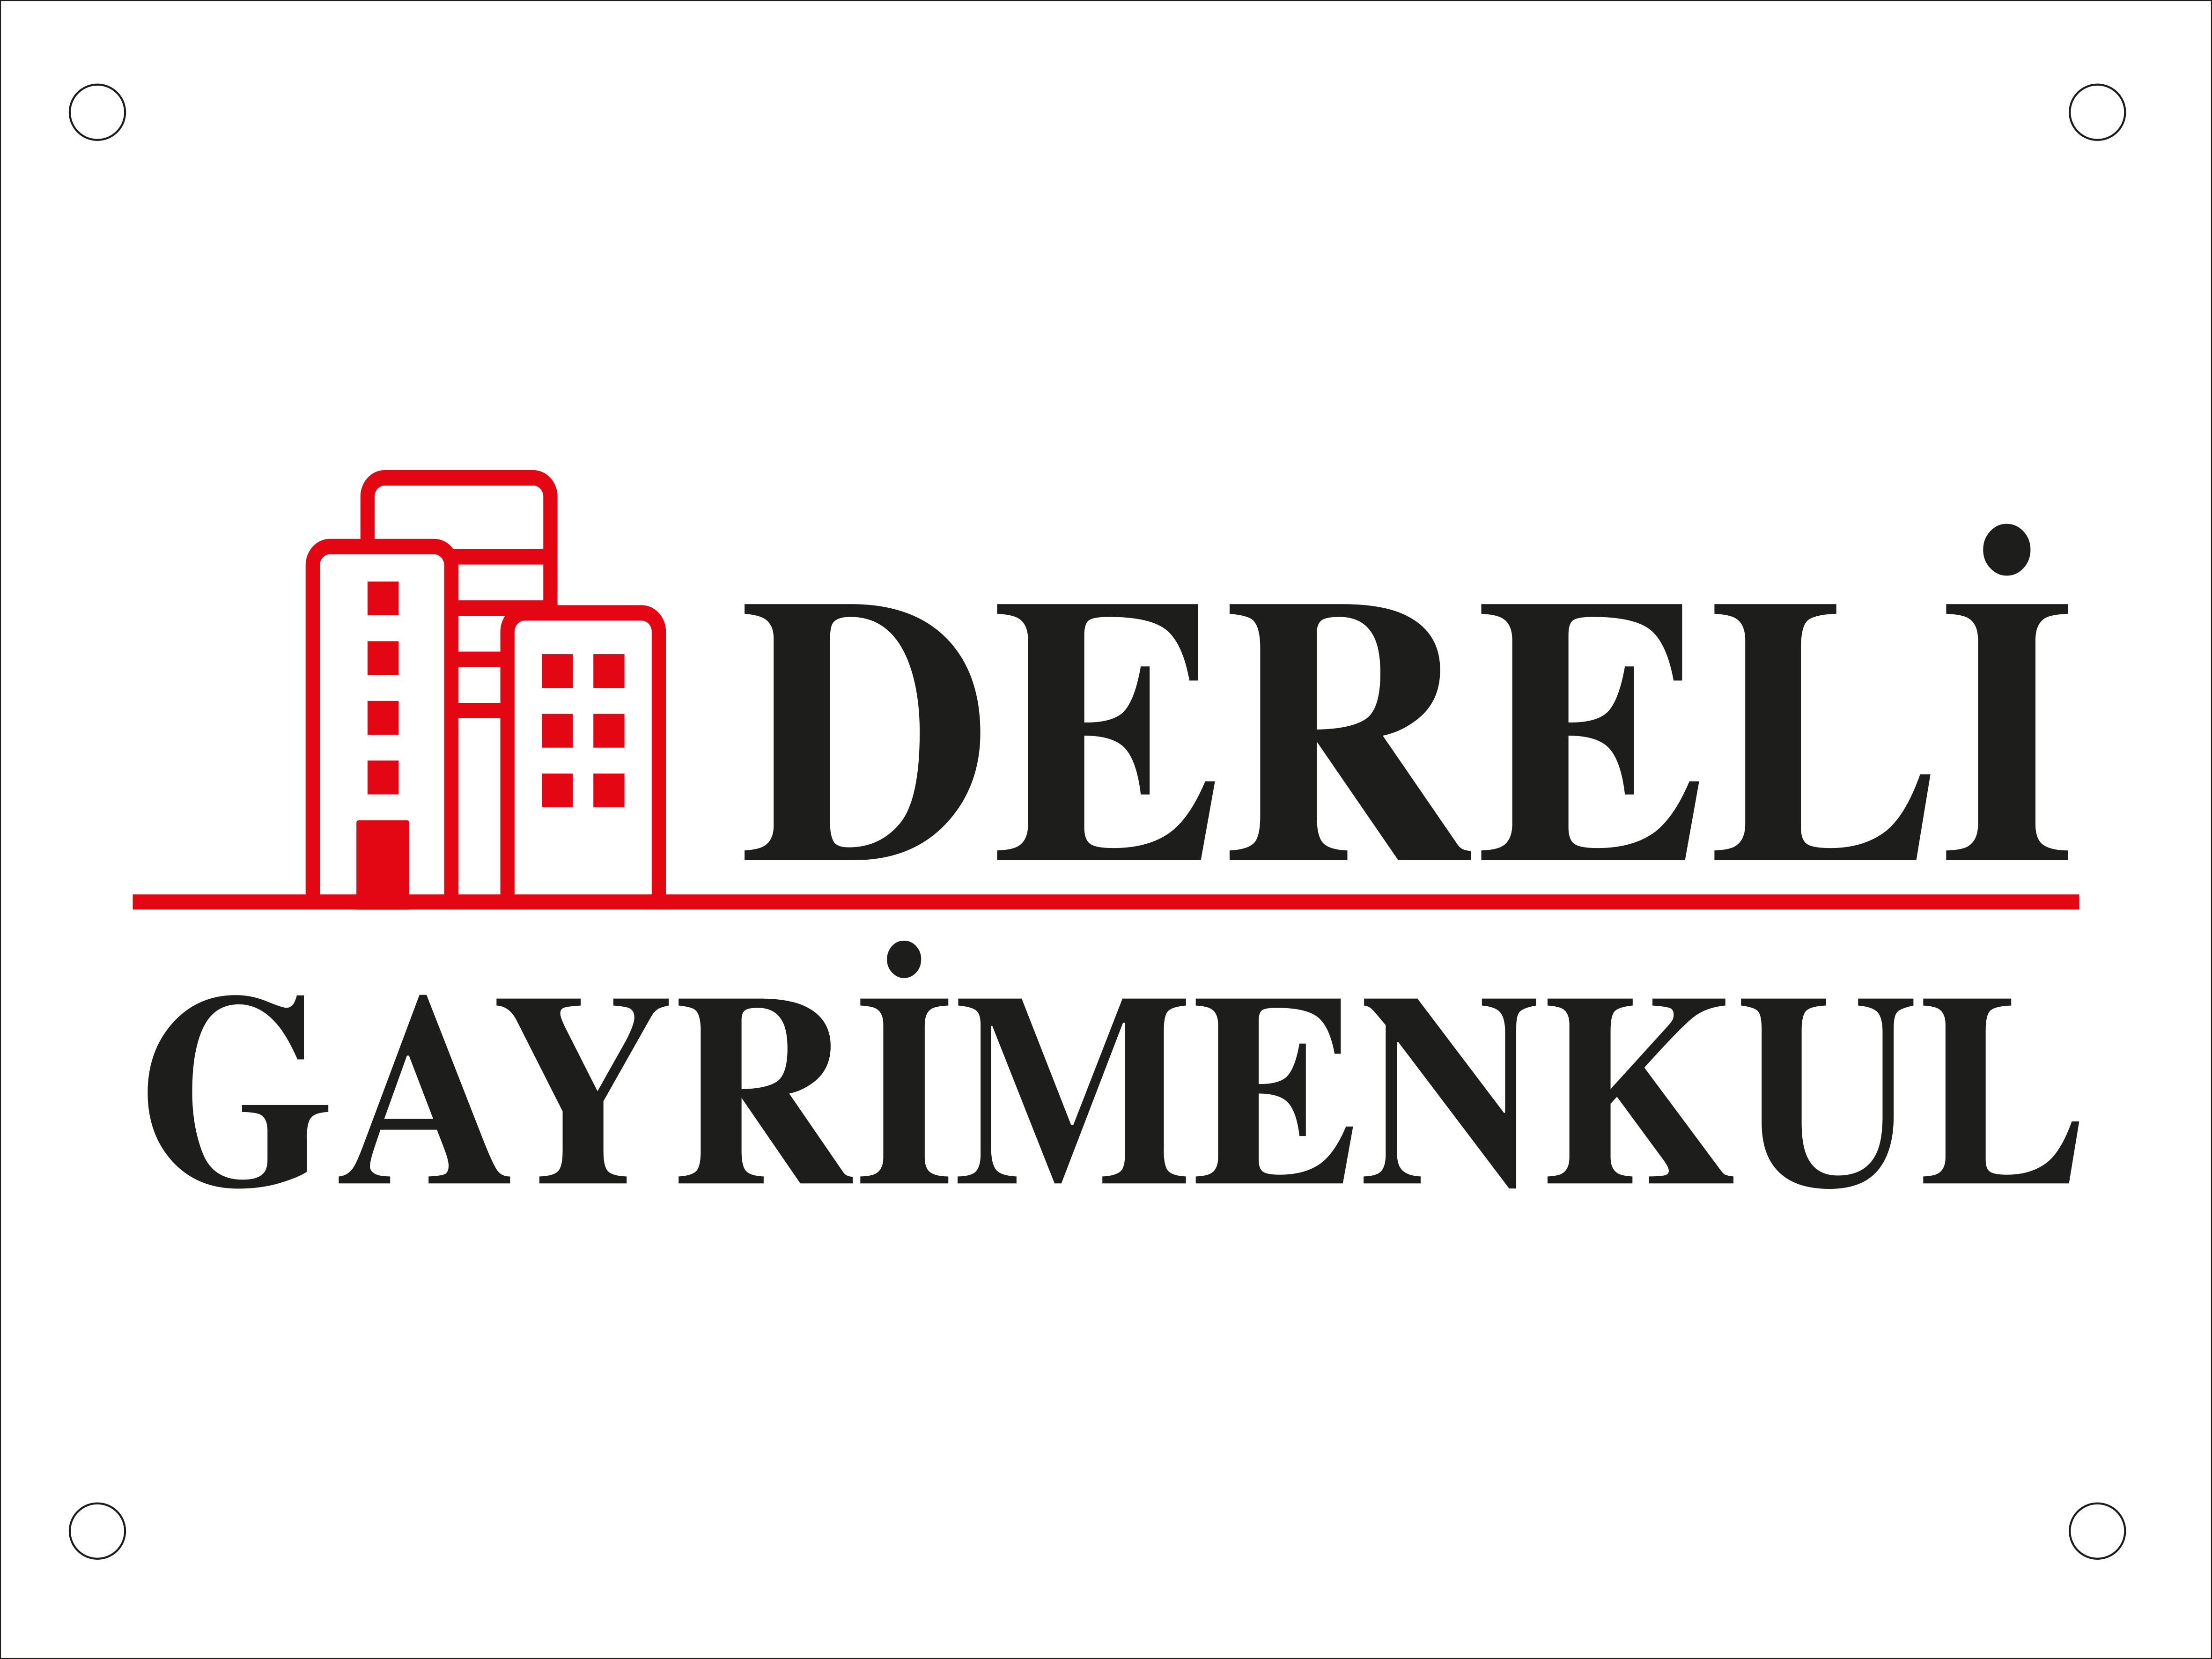 DERELİ GAYRİMENKUL logo